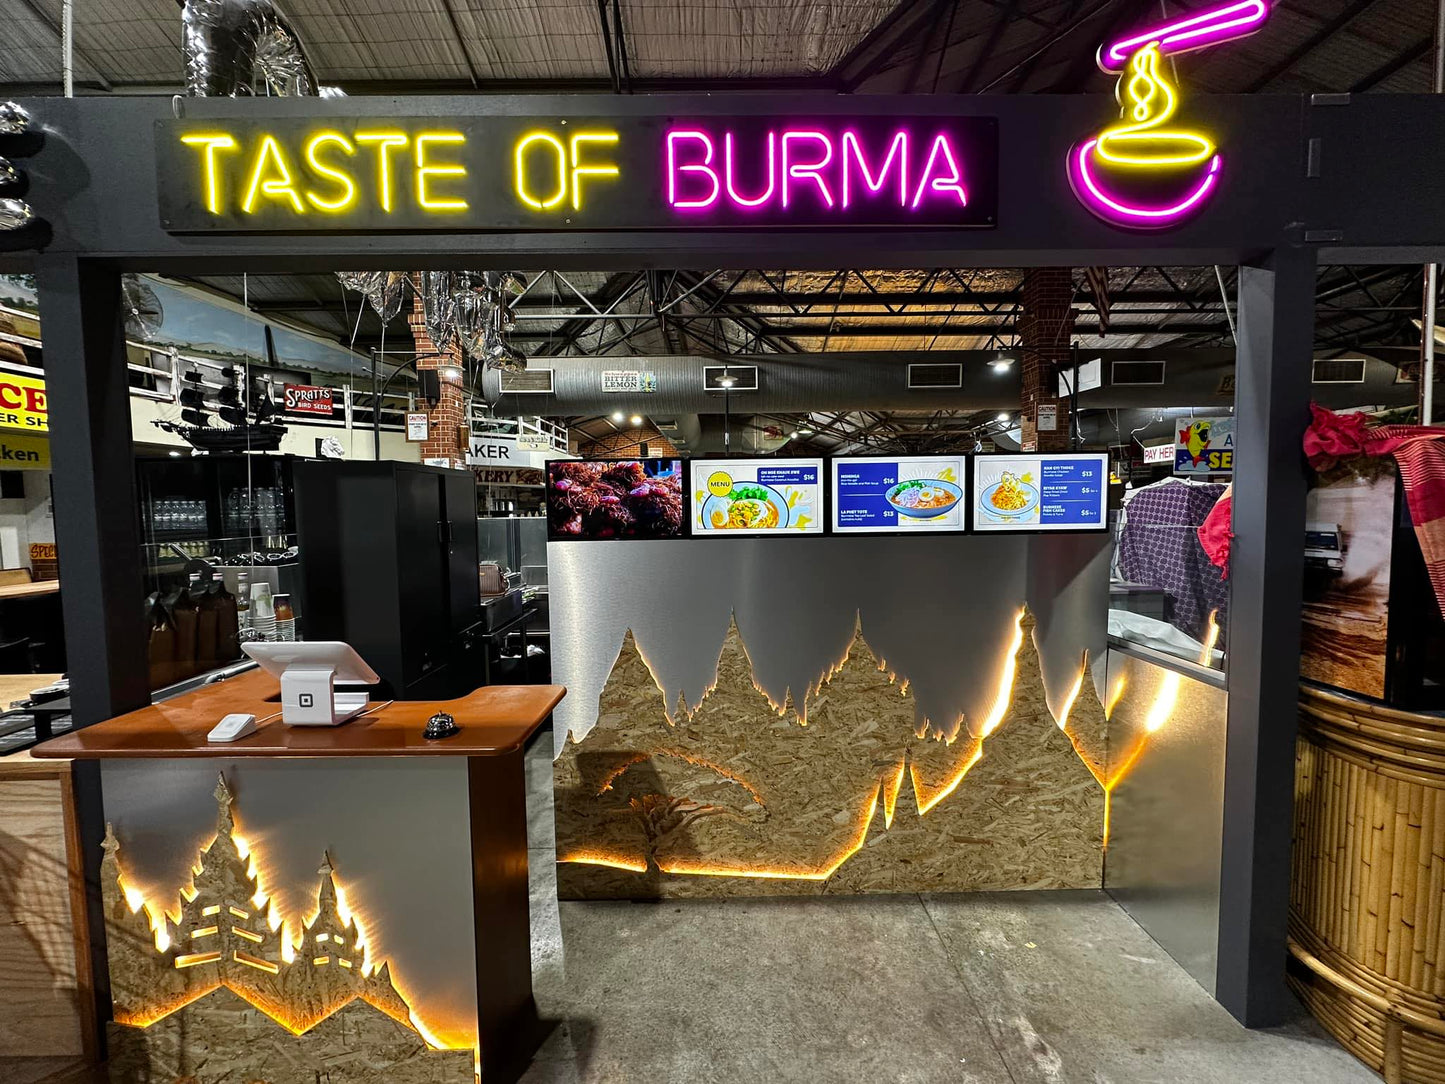 125 - Taste Of Burma